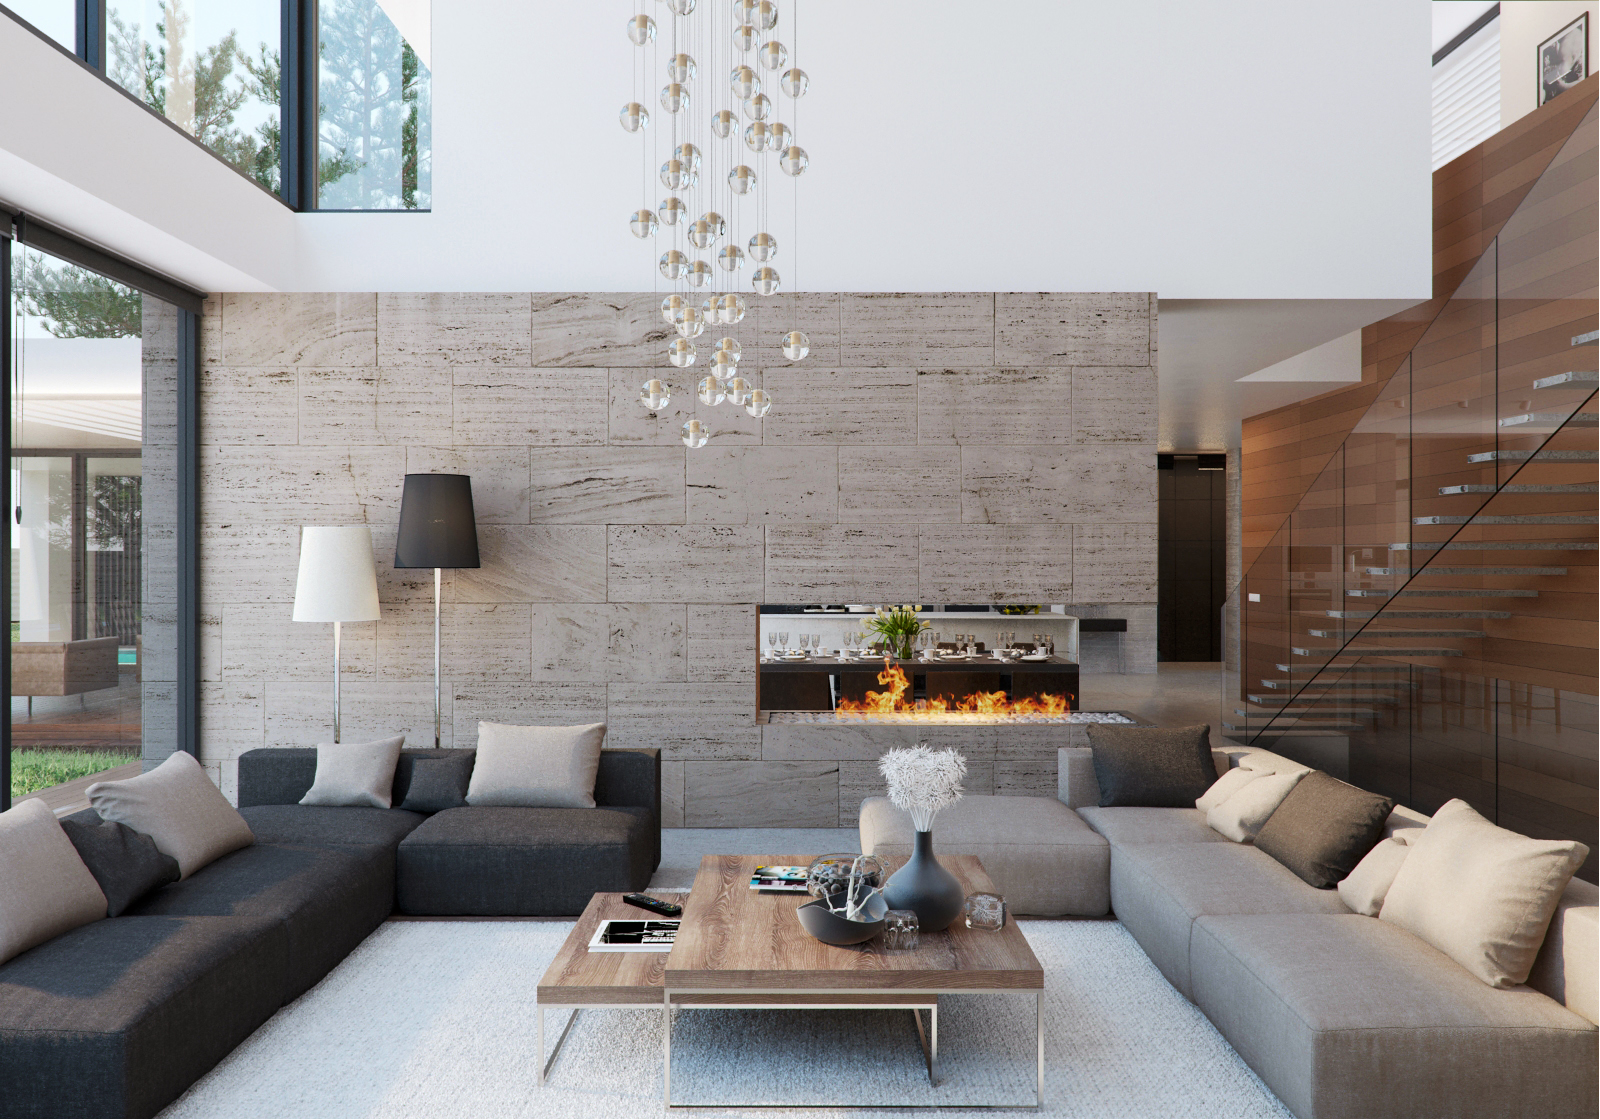 Дизайн интерьера дома в современном стиле реальные фотографии: Дизайн интерьера квартиры в современном стиле. Реальные фотографии 2019-2020